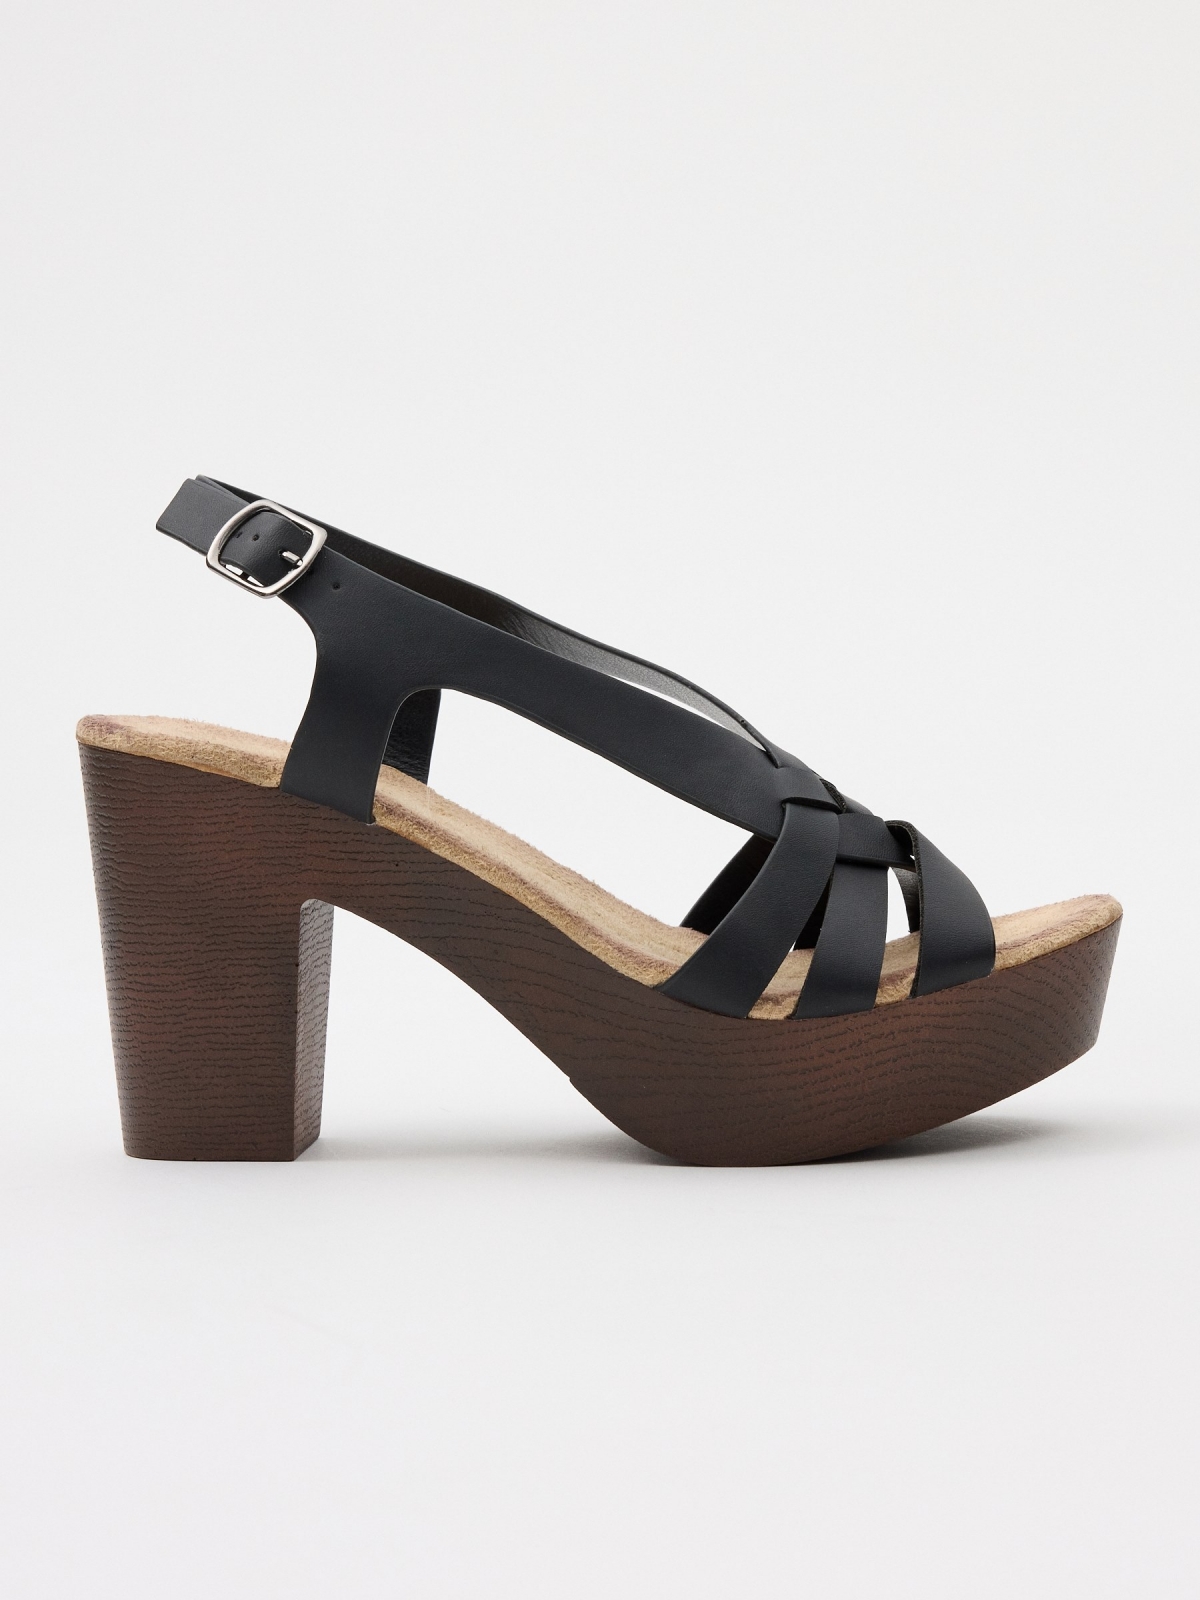 Sandal platform heel strap black/beige